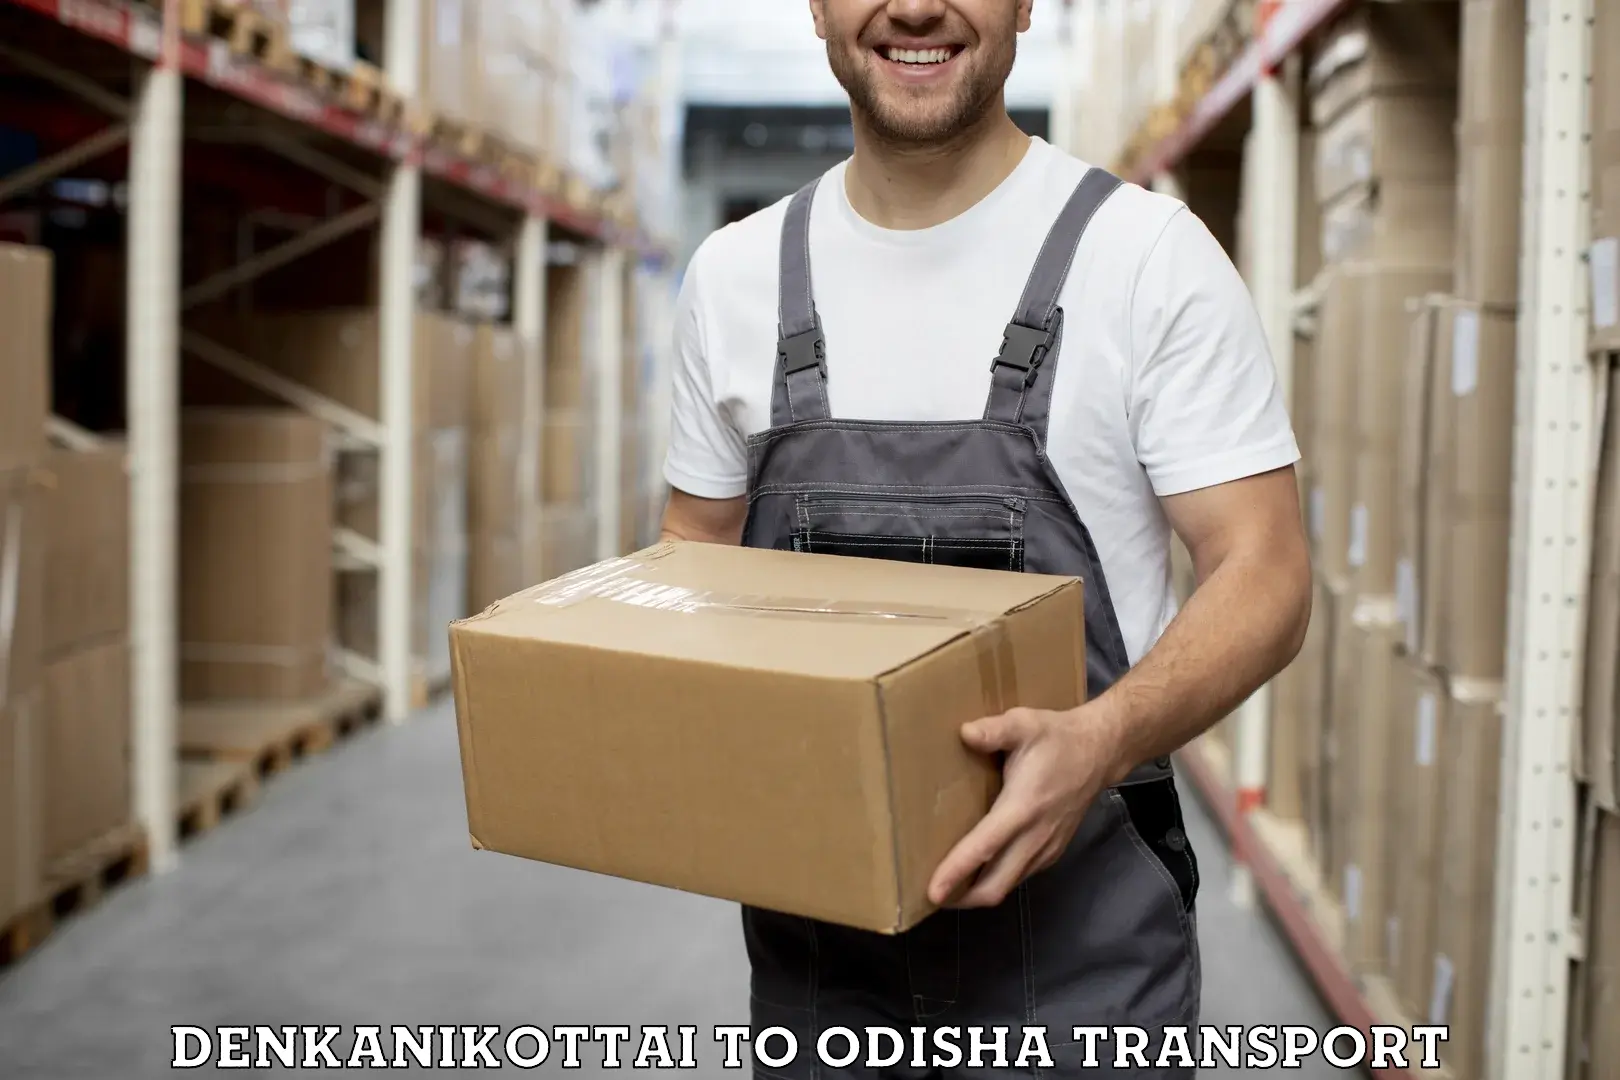 Shipping services Denkanikottai to Delang